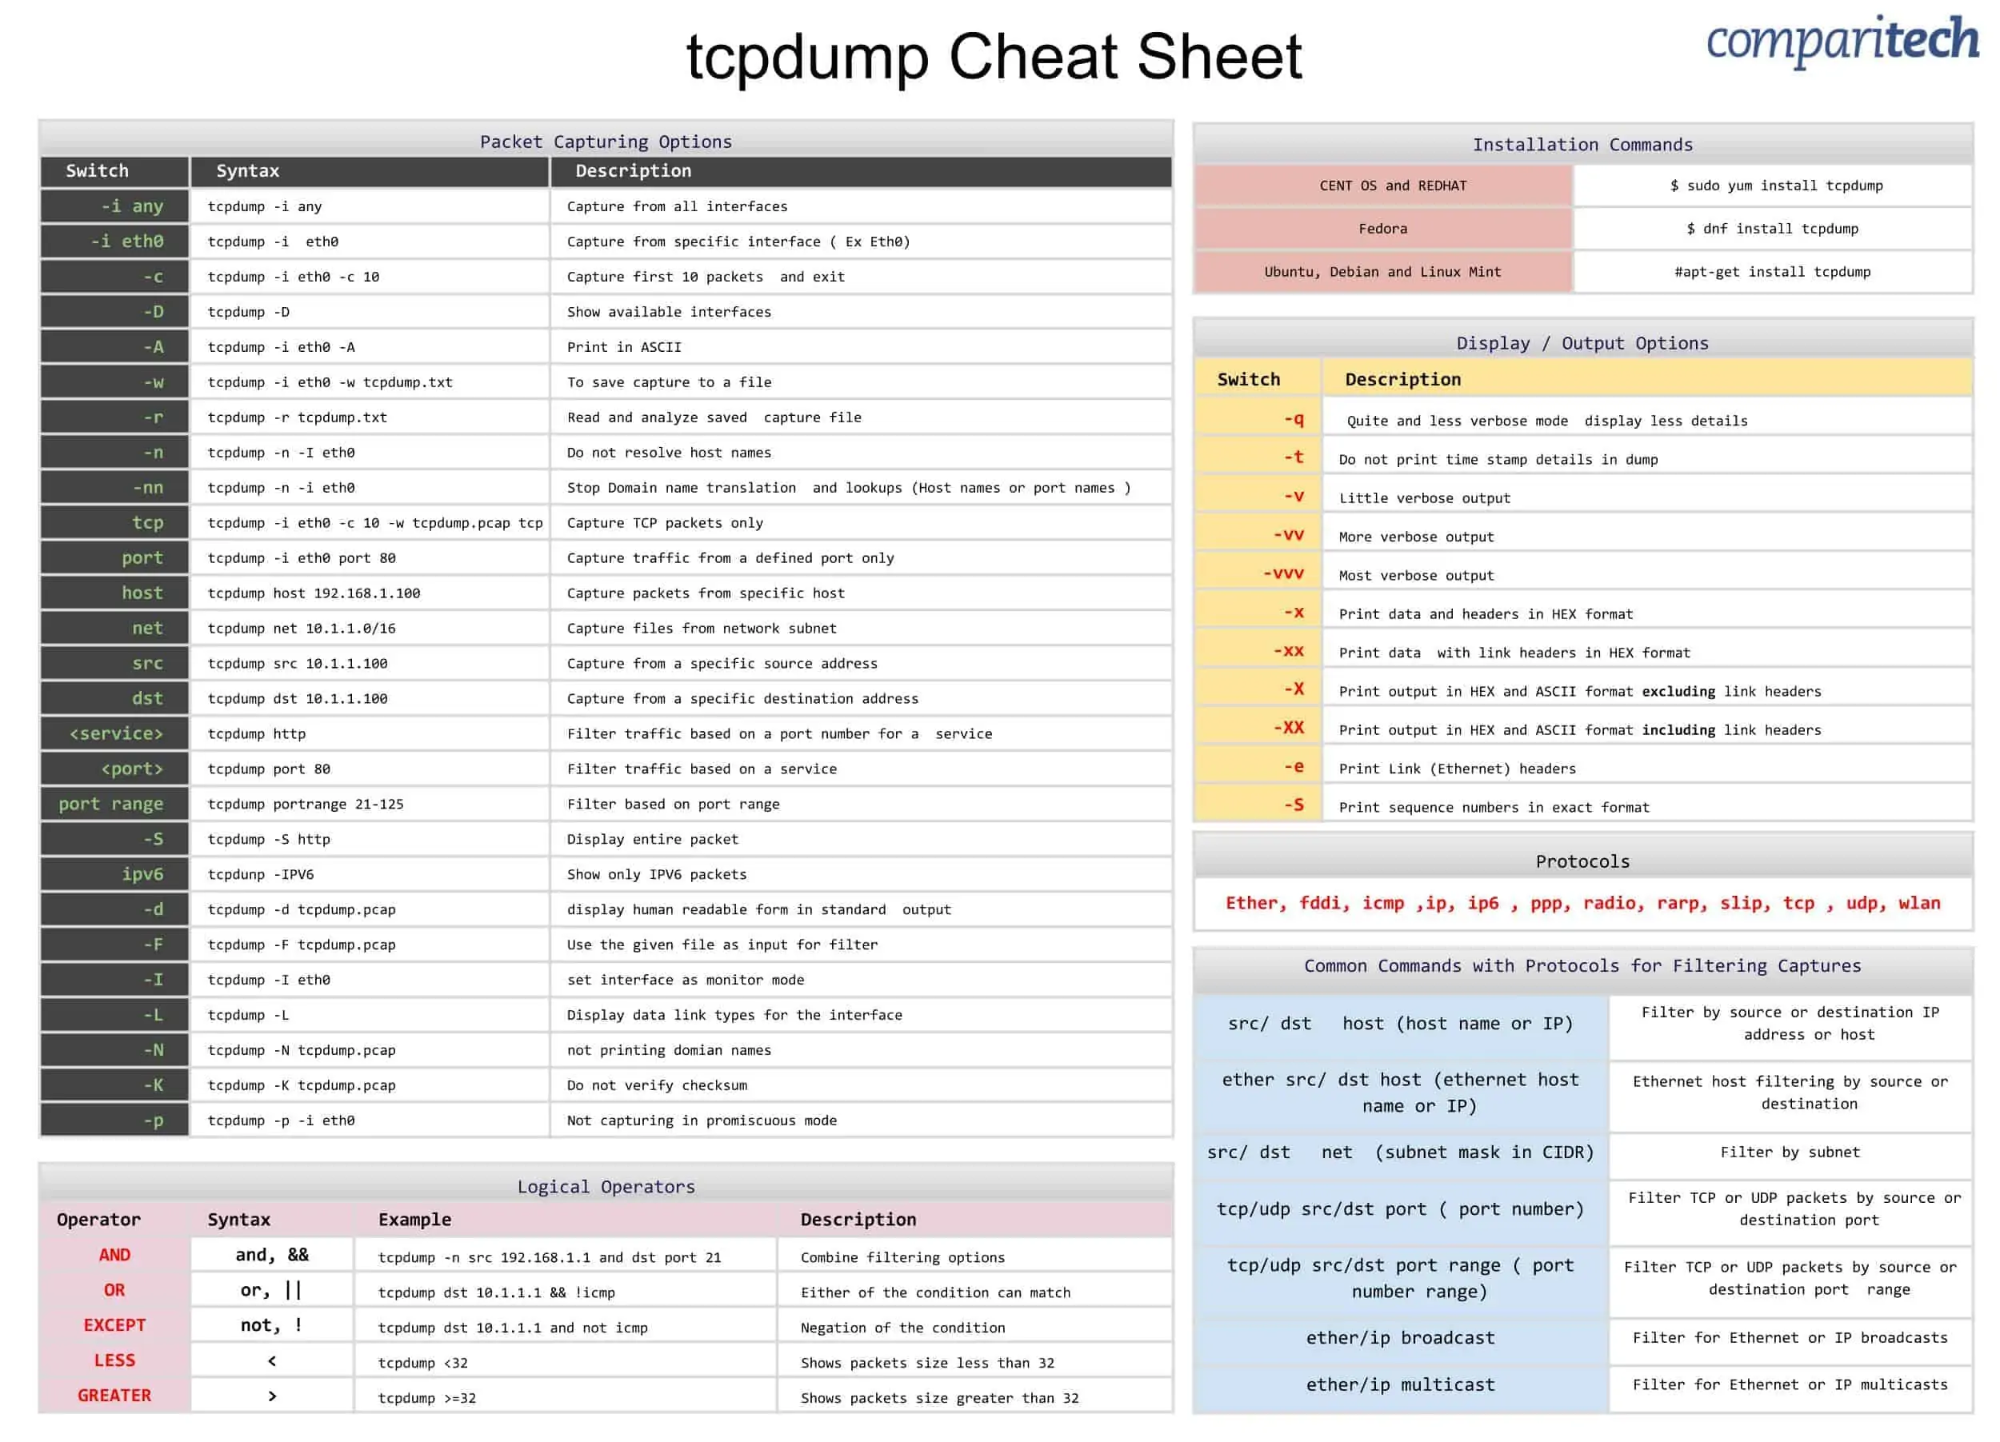 tcpdump-cheat-sheet